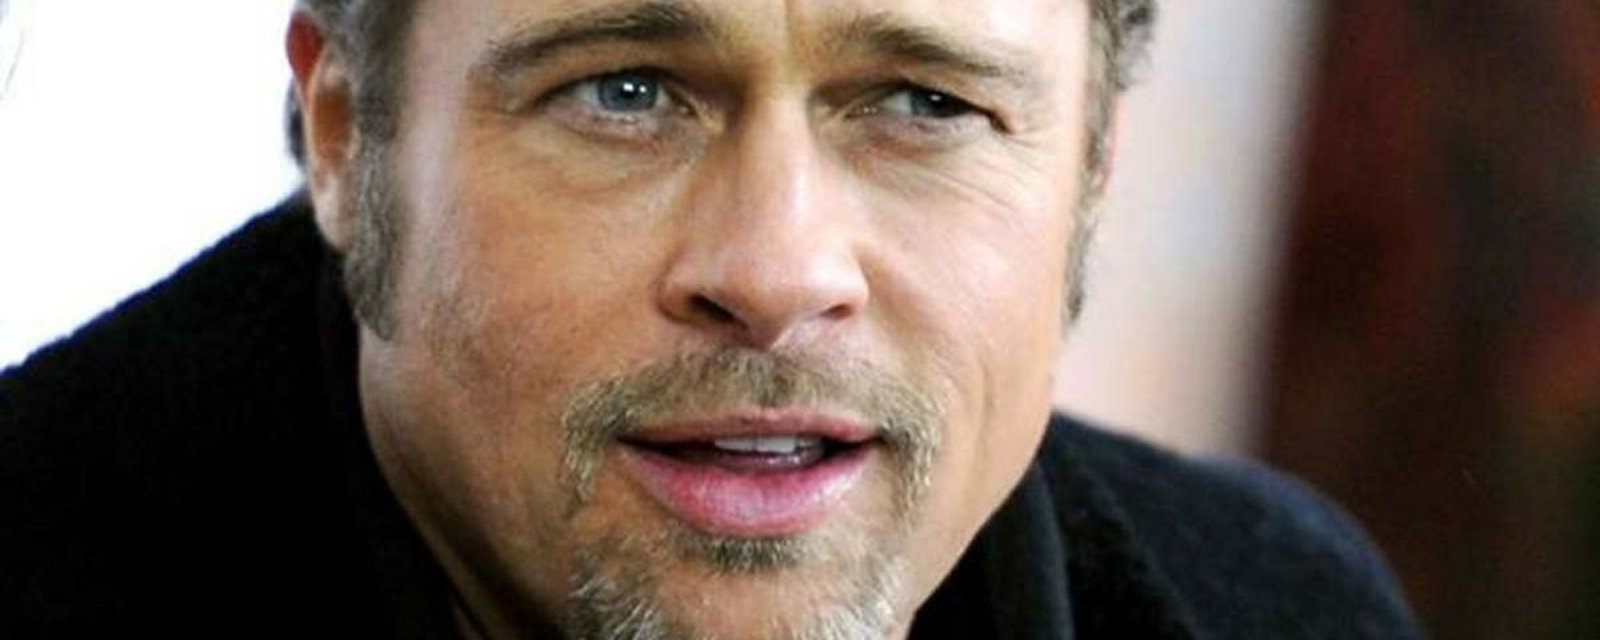 Une célèbre actrice américaine déclare être la nouvelle blonde de Brad Pitt!